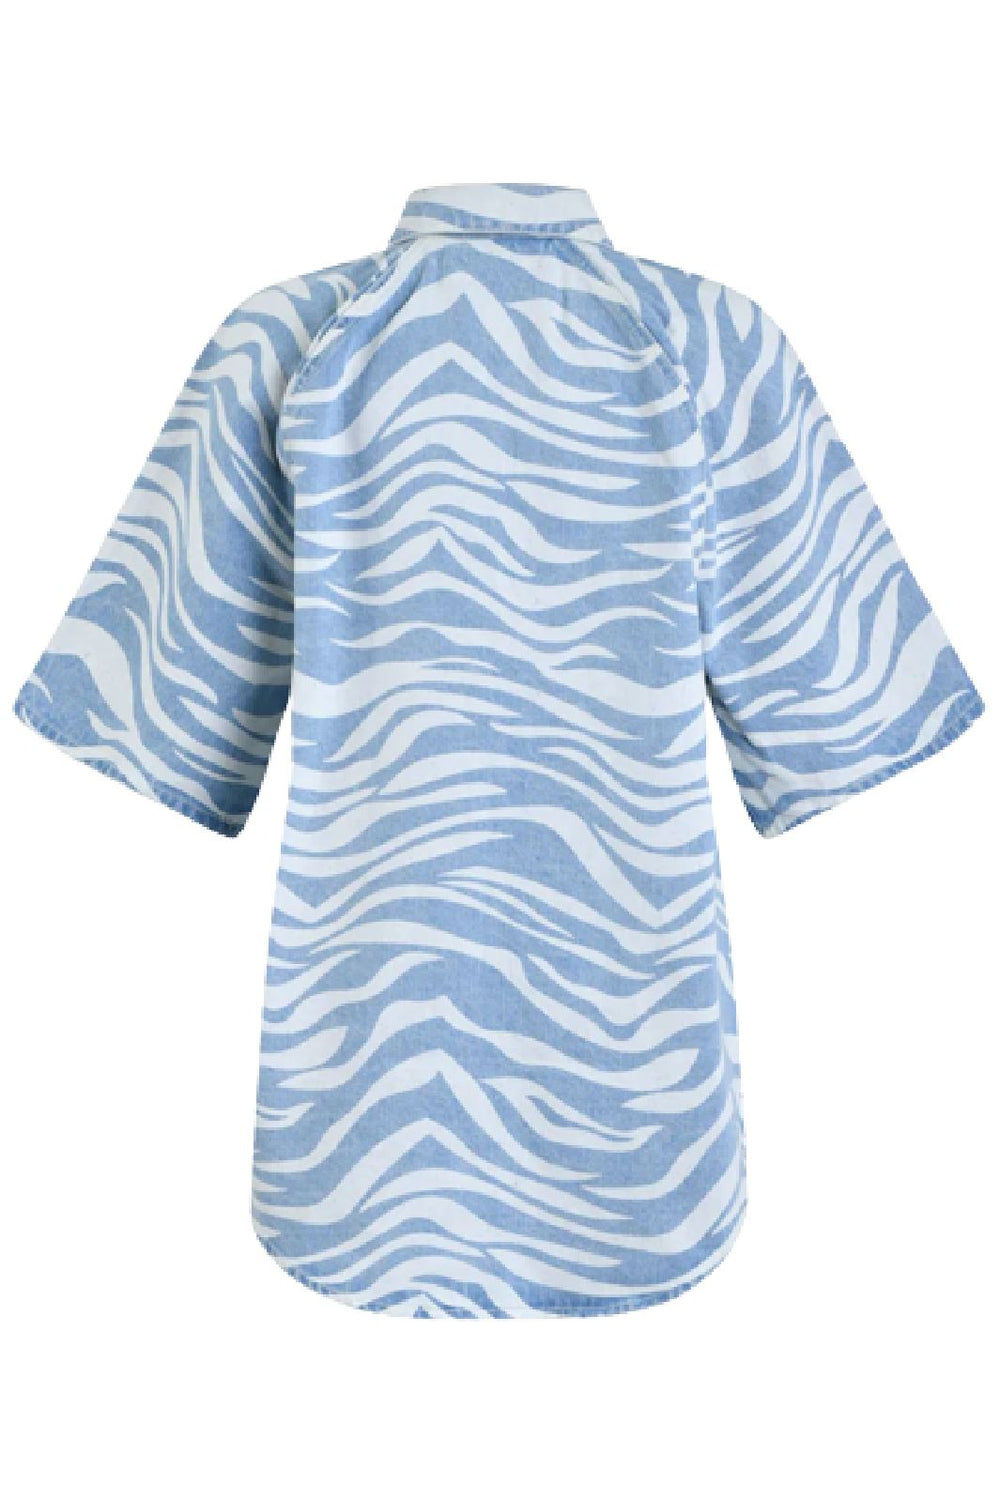 Sofie Schnoor - S233237 Long Shirt - Light Denim Blue Skjorter 